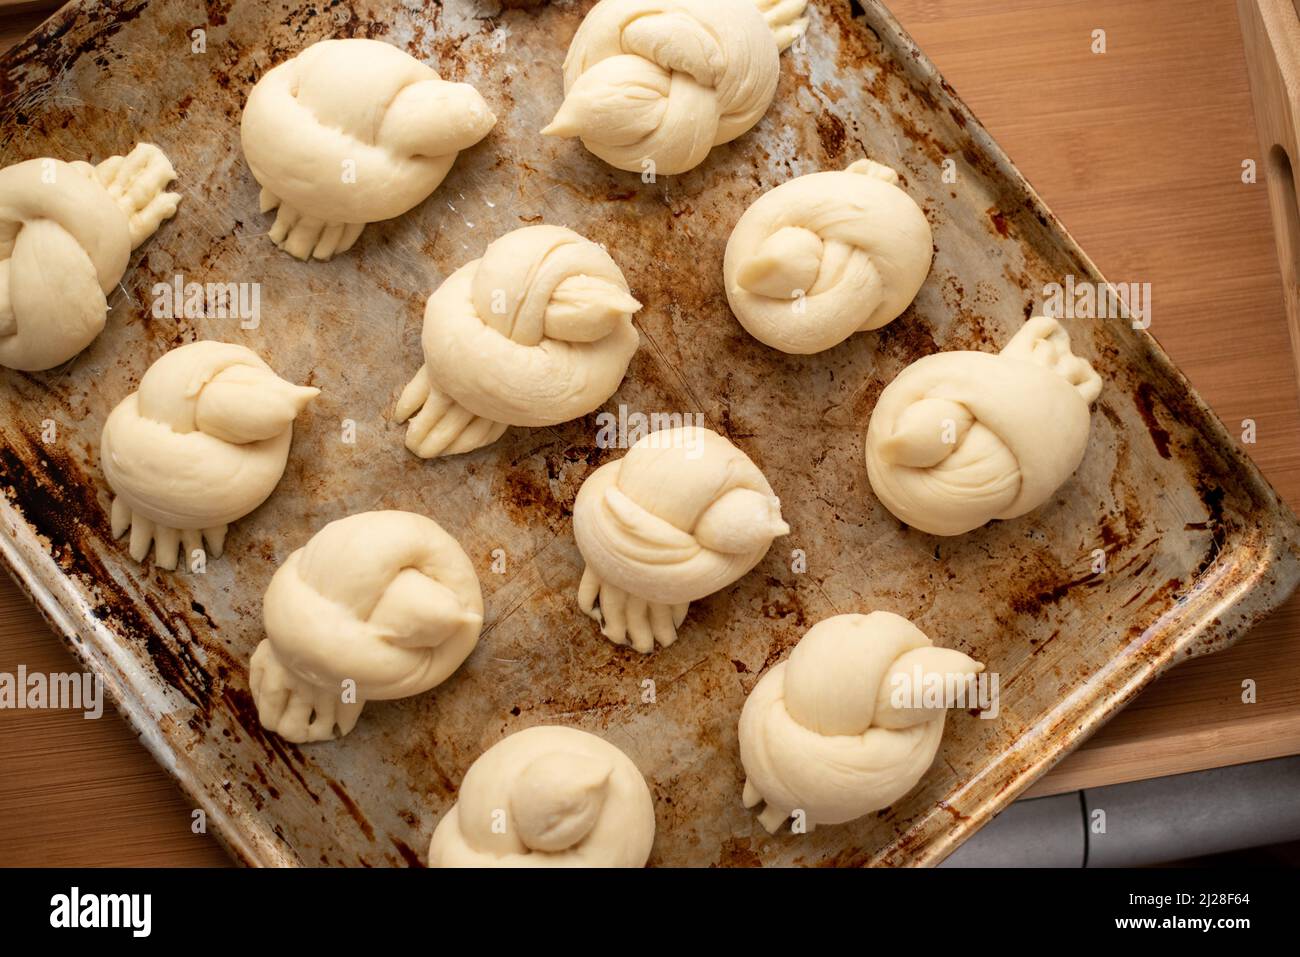 Petits pains sous forme d'oiseaux sur une plaque de cuisson Banque D'Images